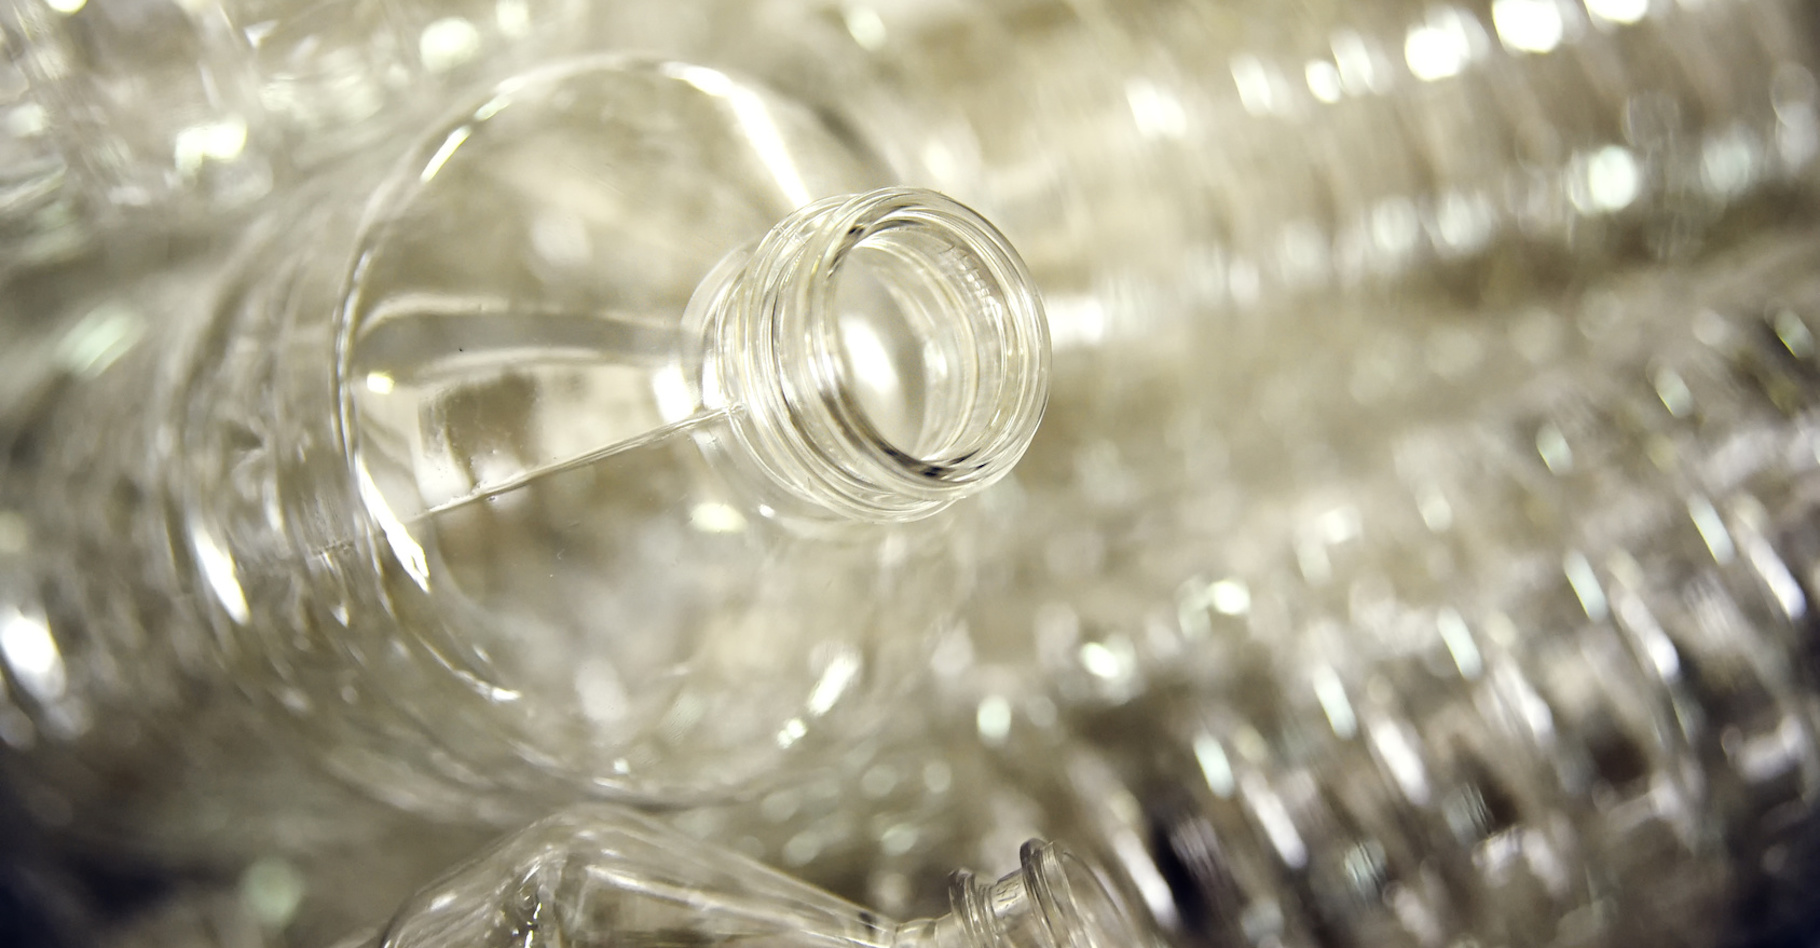 Le polytéréphtalate d’éthylène, encore connu sous le nom de PET, est un polymère thermoplastique dont on se sert notamment pour fabriquer les bouteilles de boissons gazeuses. Il est en effet imperméable au CO2. © Evgeniy Kalinovskiy, Fotolia